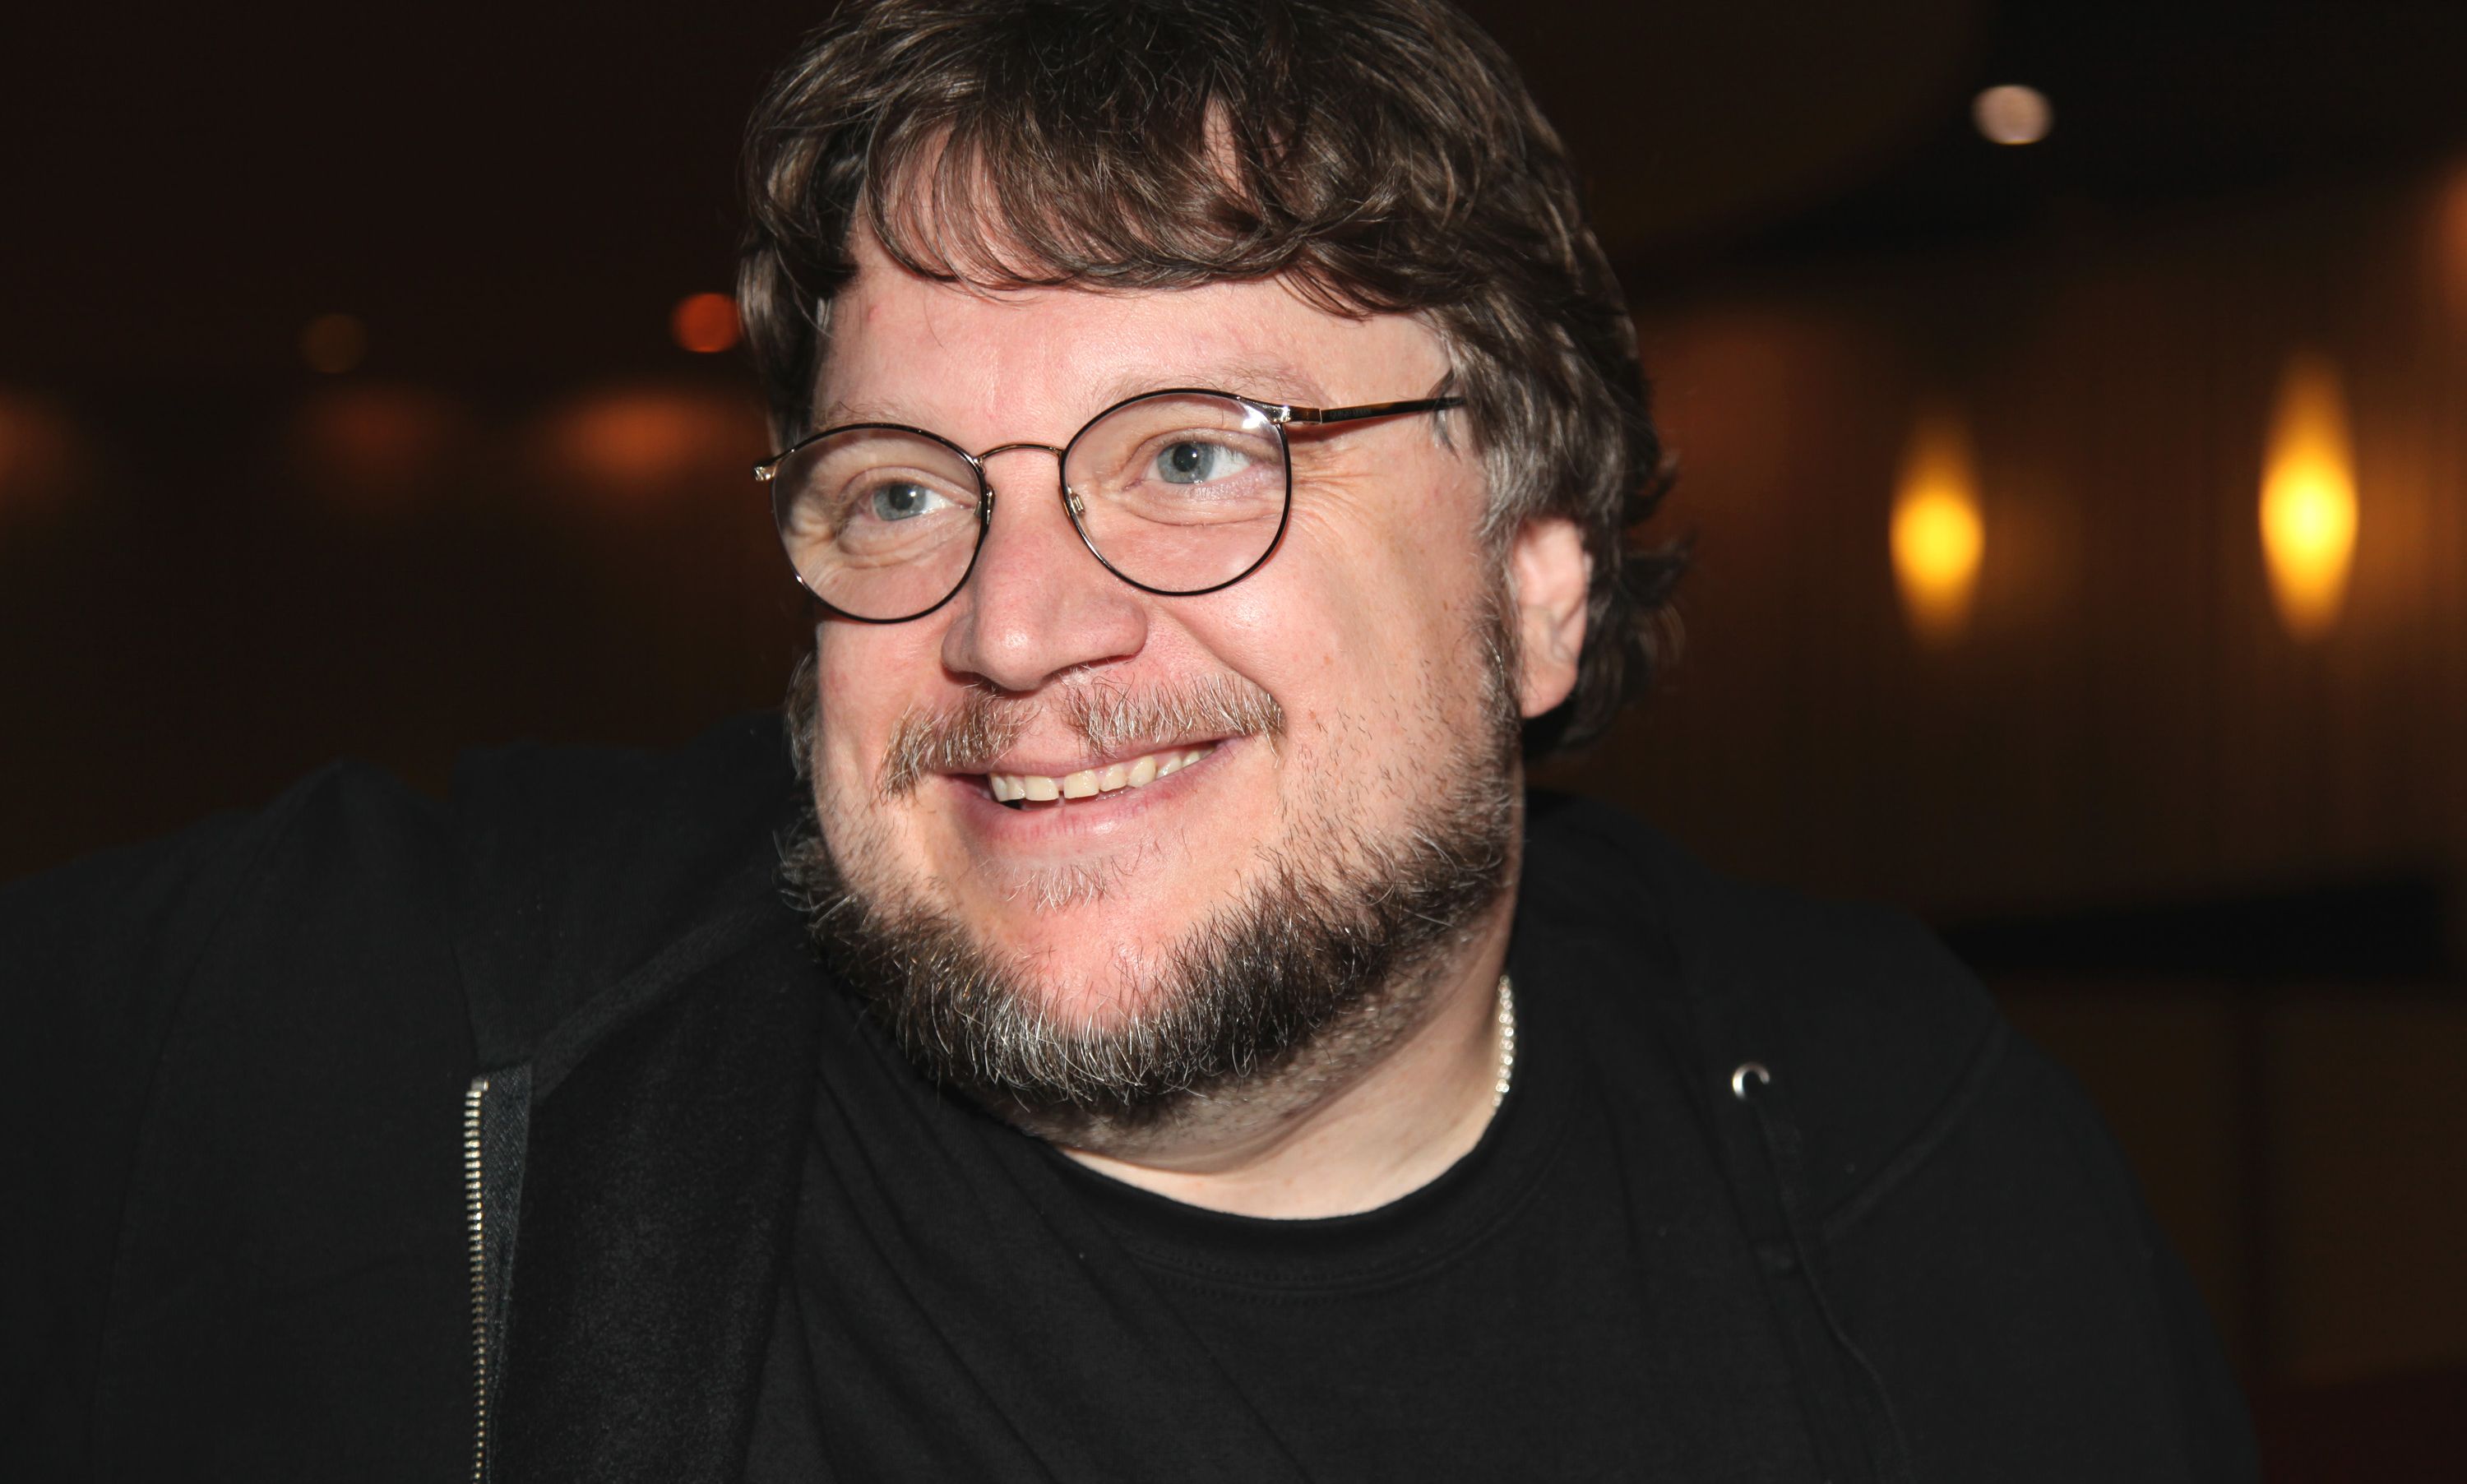 Guillermo del Toro writing 'Pacific Rim 2' with Zak Penn